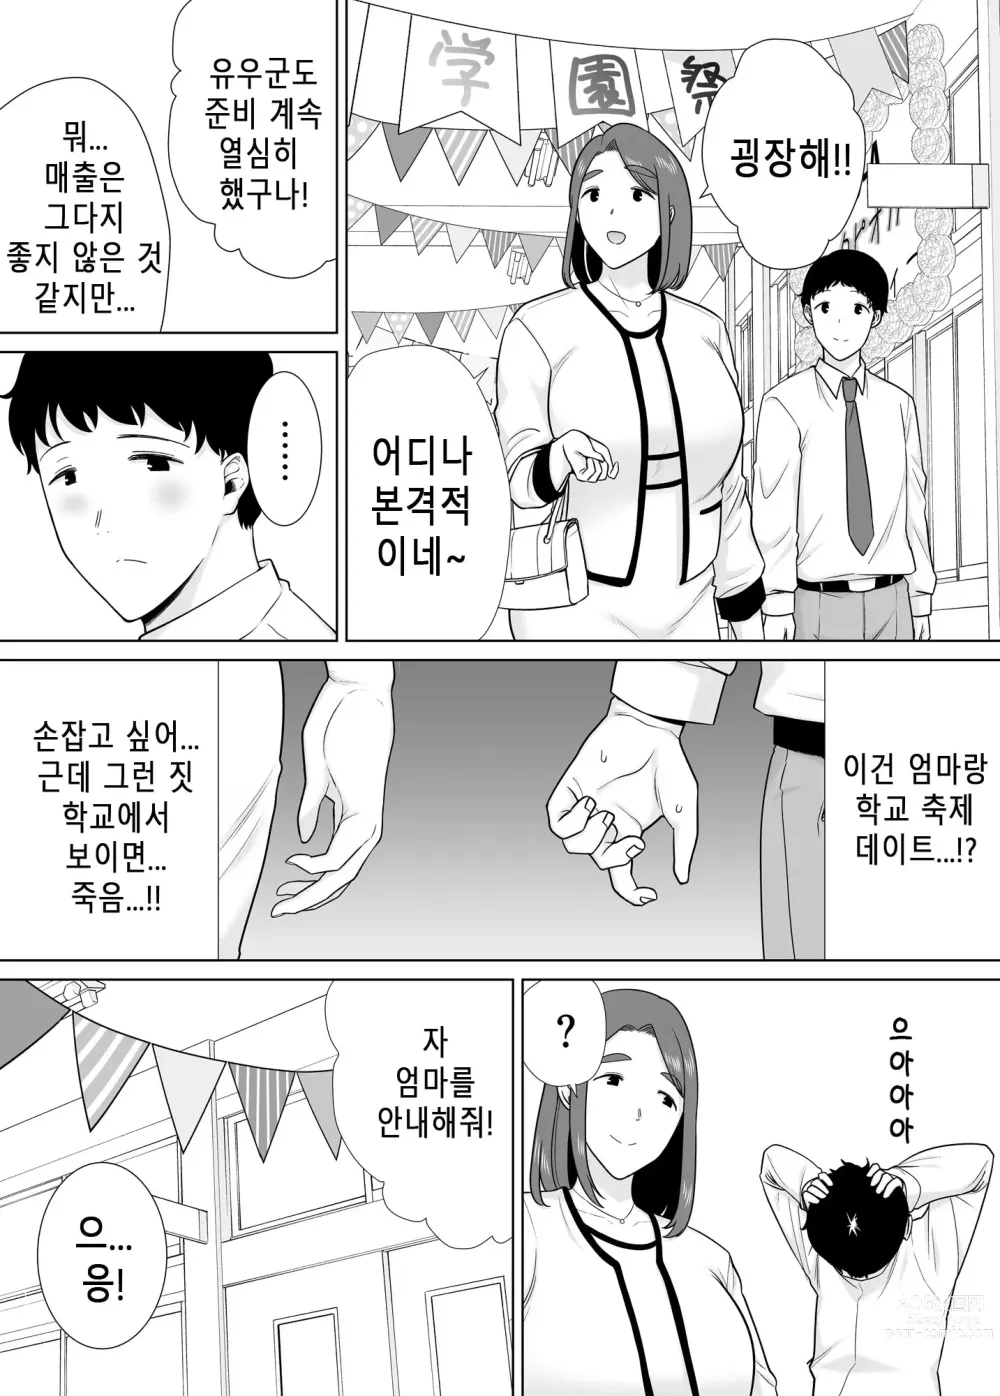 Page 9 of doujinshi 나의 엄마이자 내가 좋아하는 사람. 7